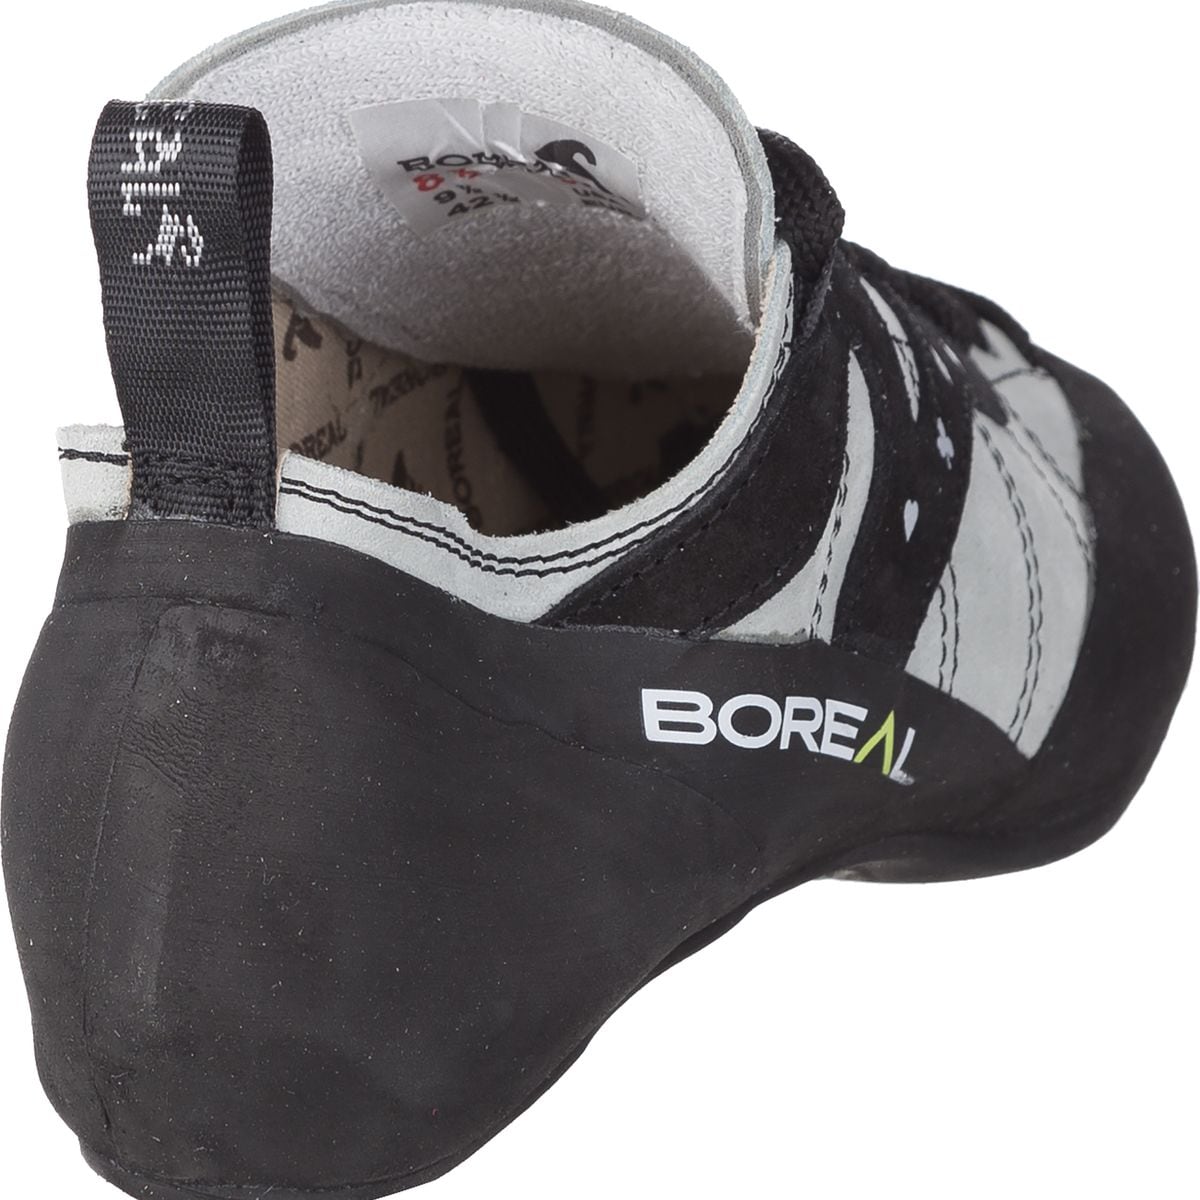 boreal ace climbing shoes